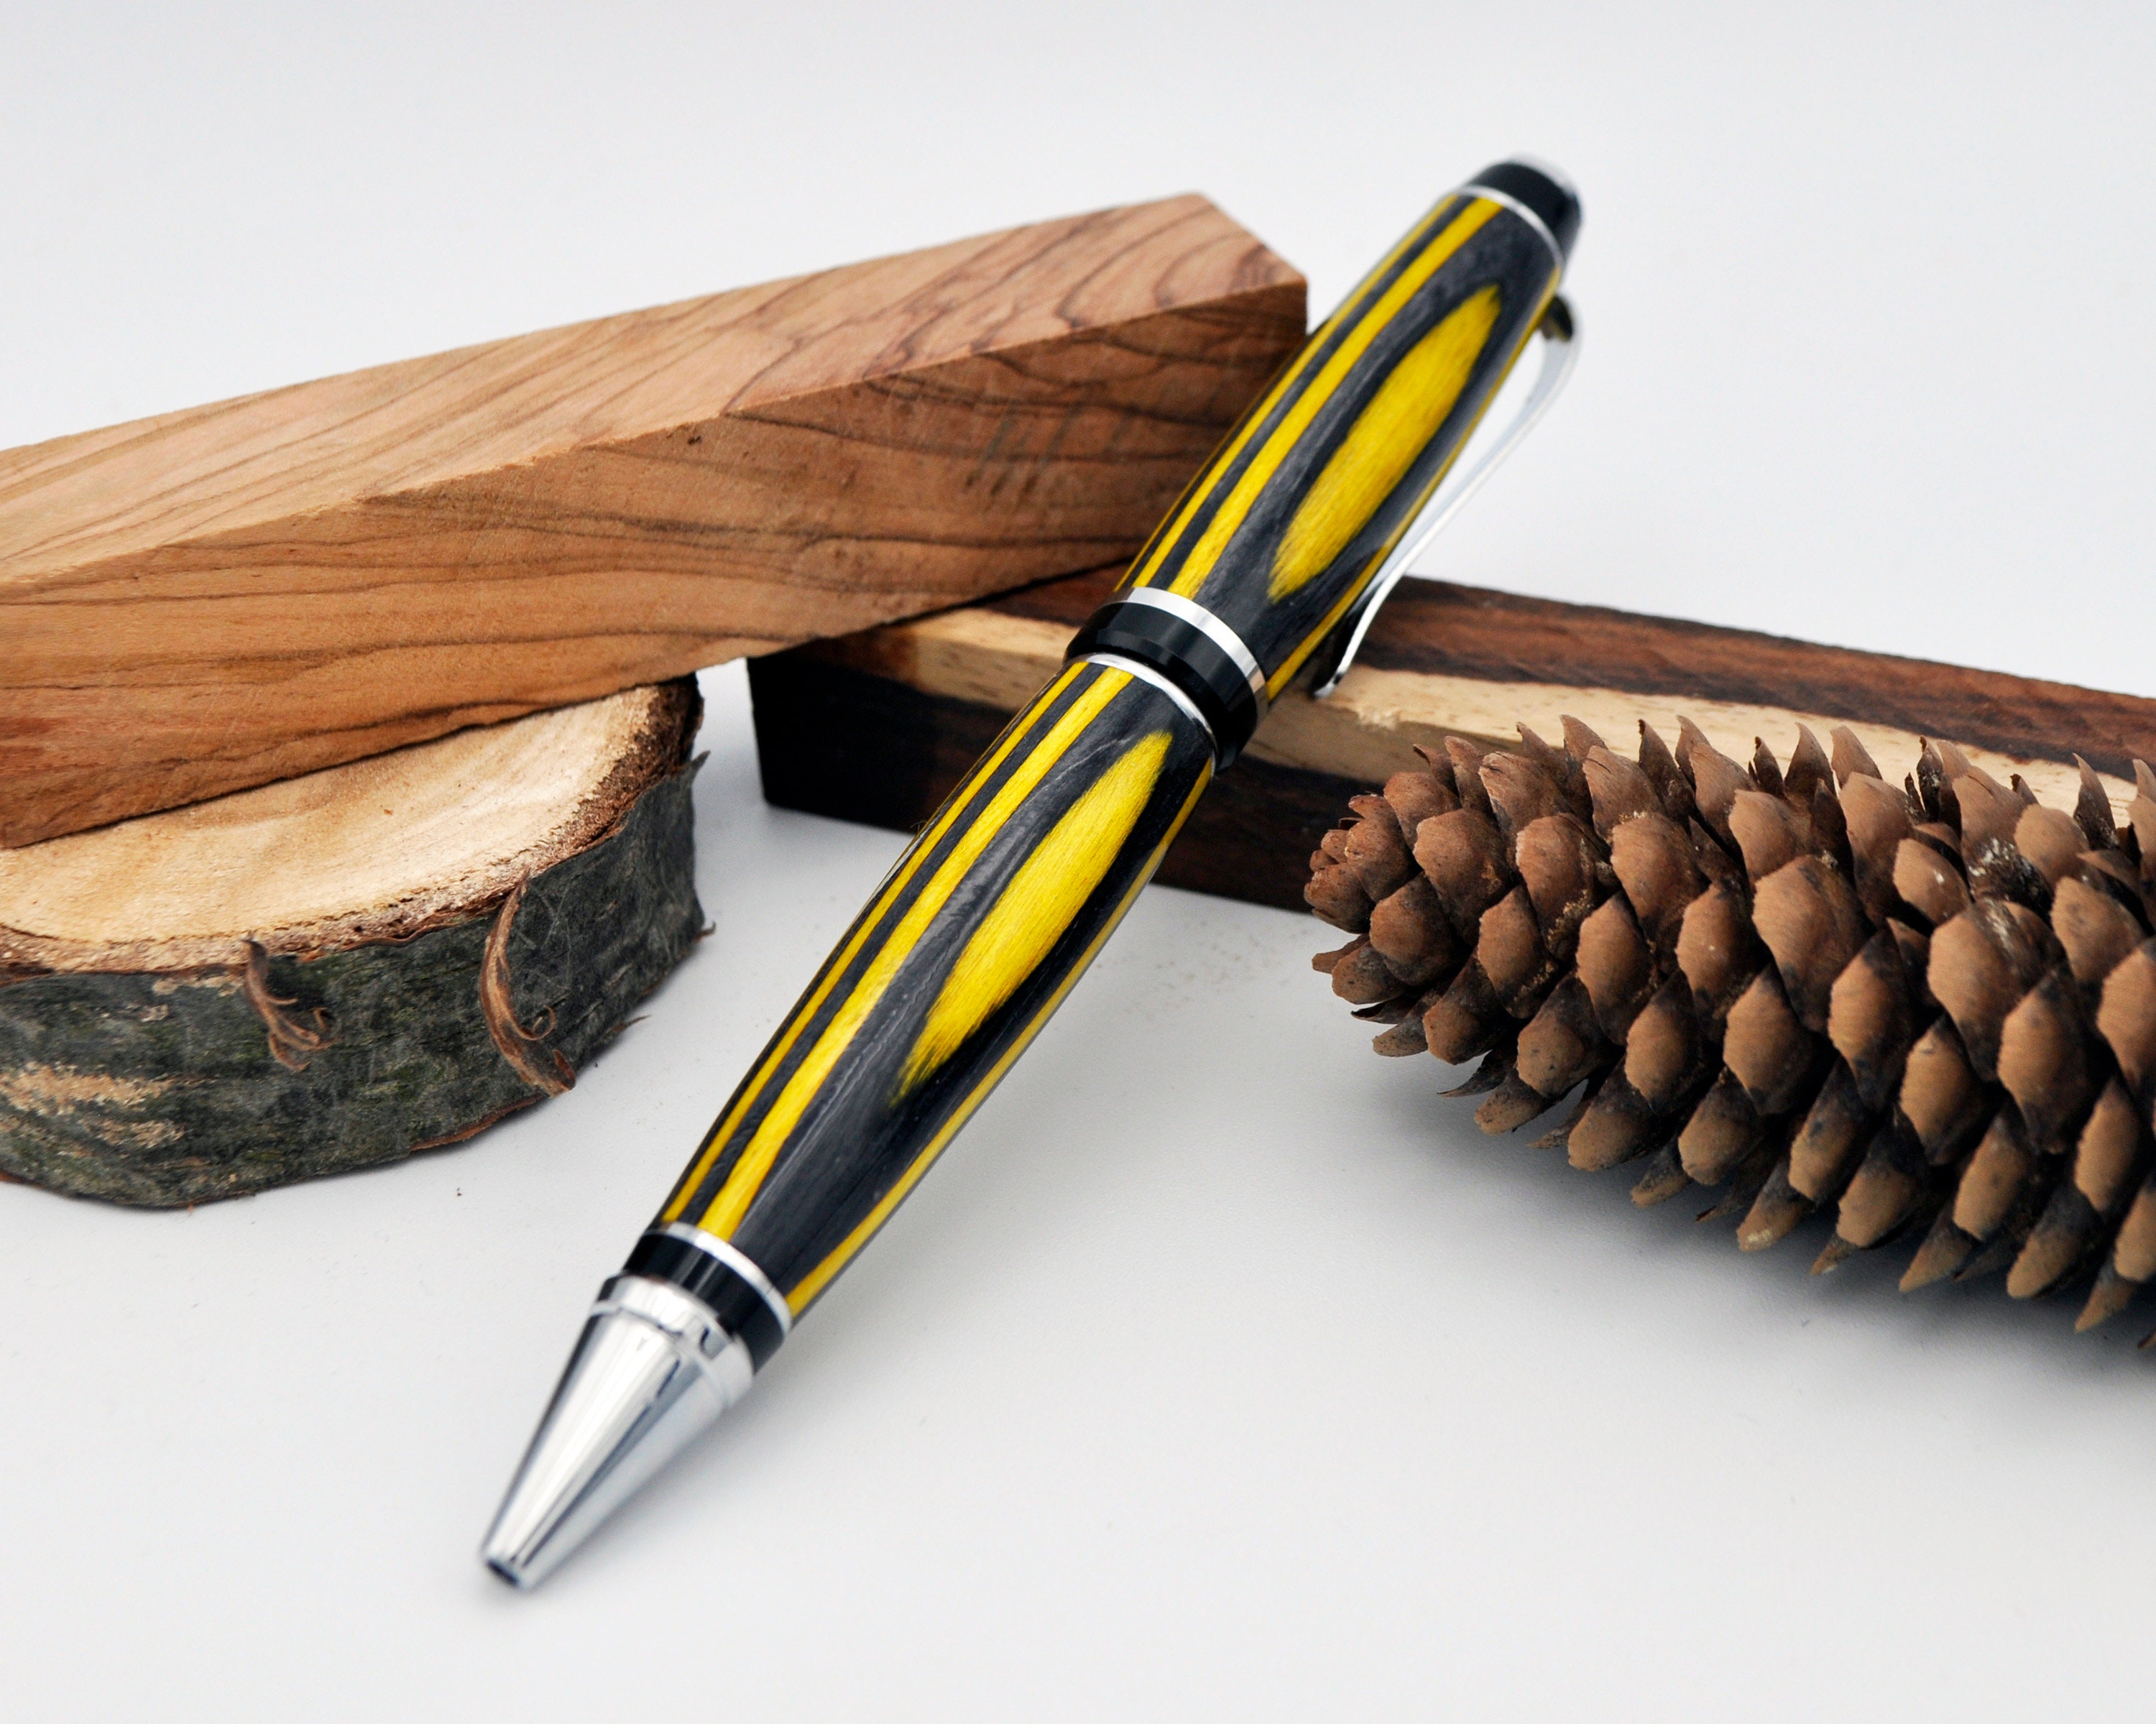 Wooden Cigar Pen